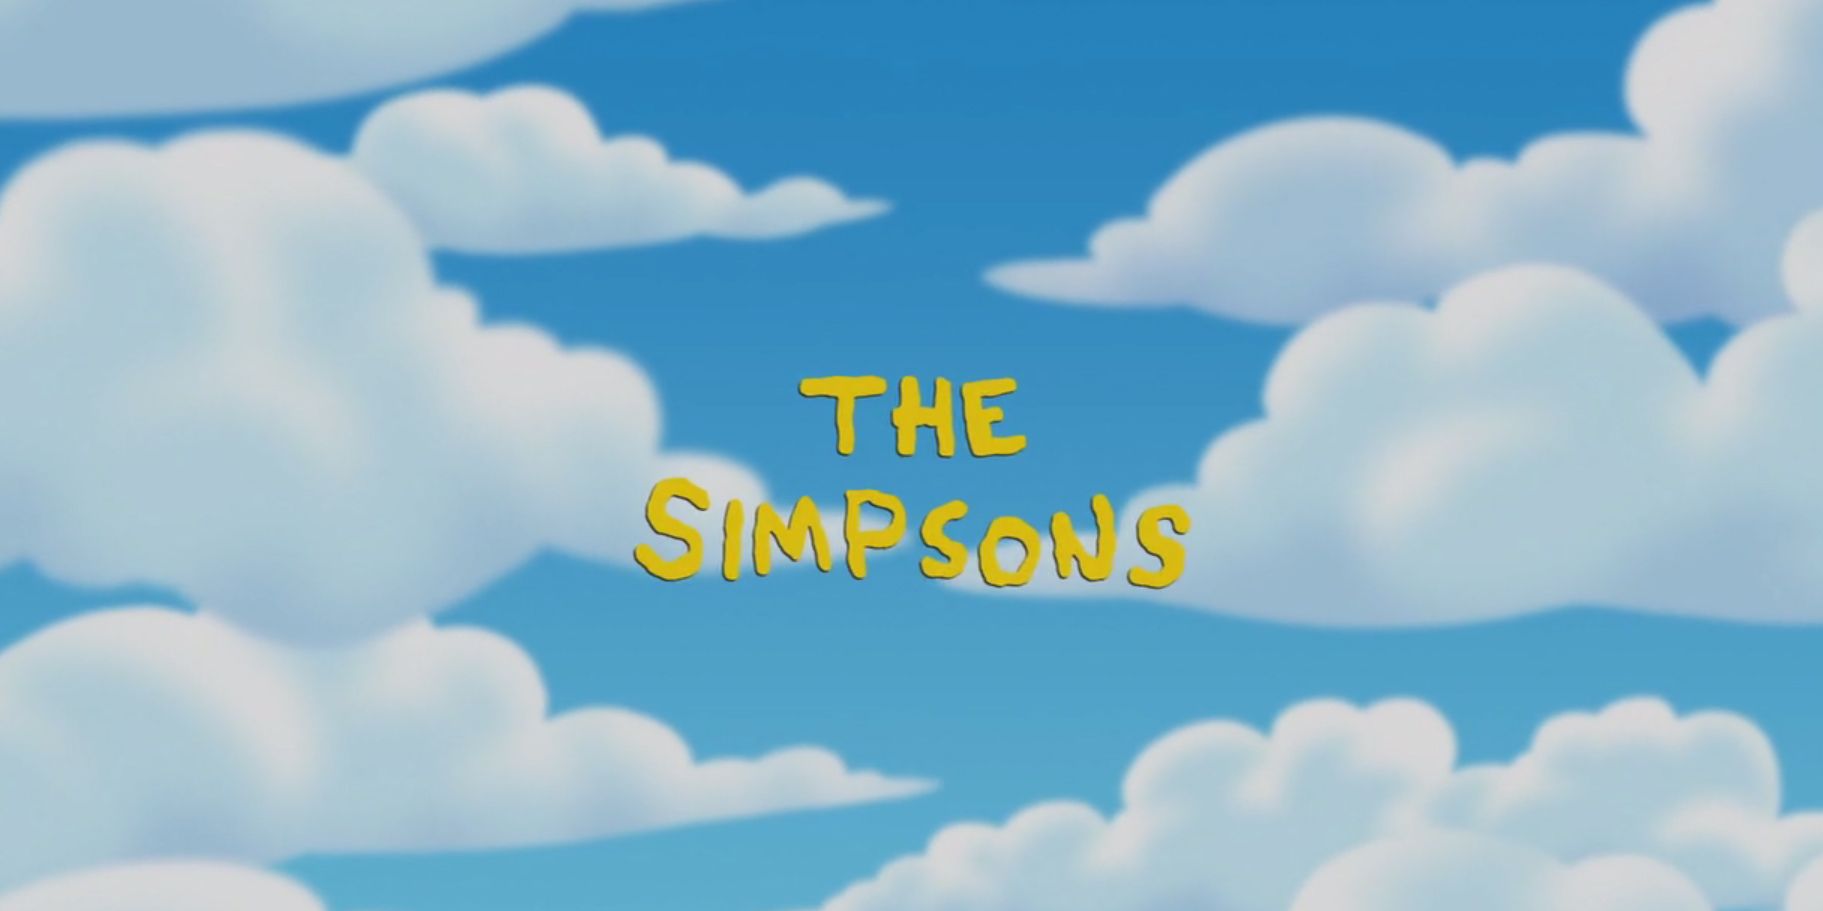 Abertura dos Simpsons é recriada usando apenas imagens de estoque